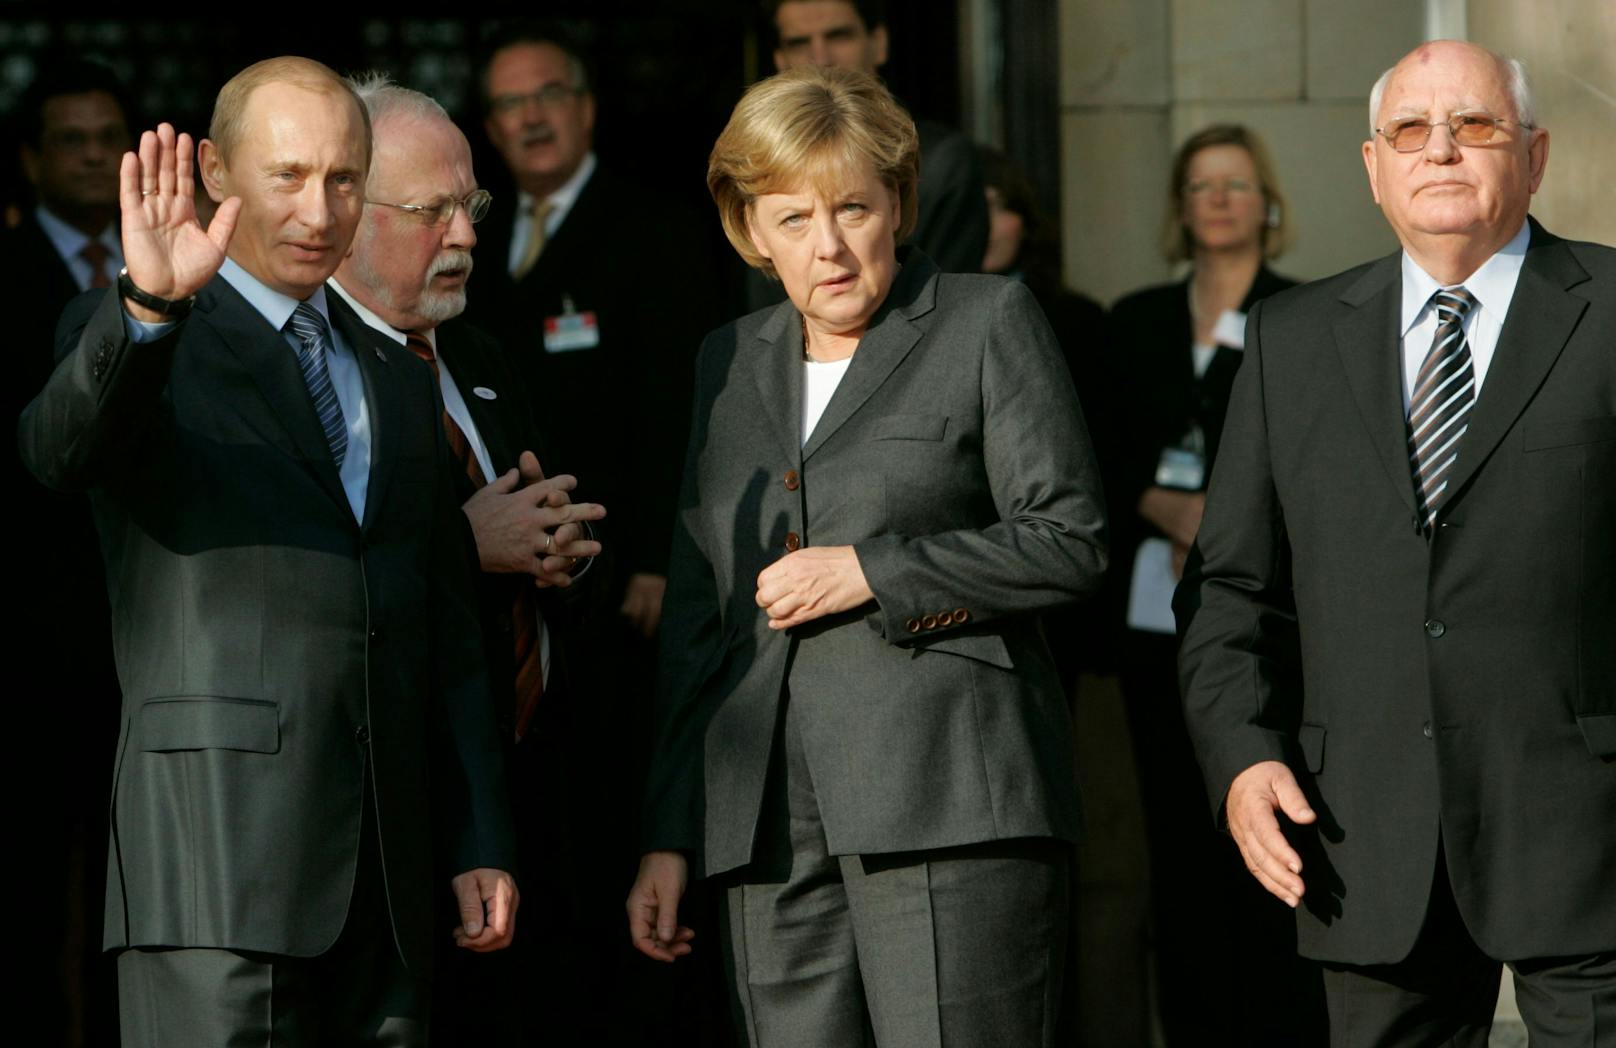 Drei Jahre später waren beide für deutsch-russische Dialoge bei Schröder-Nachfolgerin Angela Merkel zu Besuch.